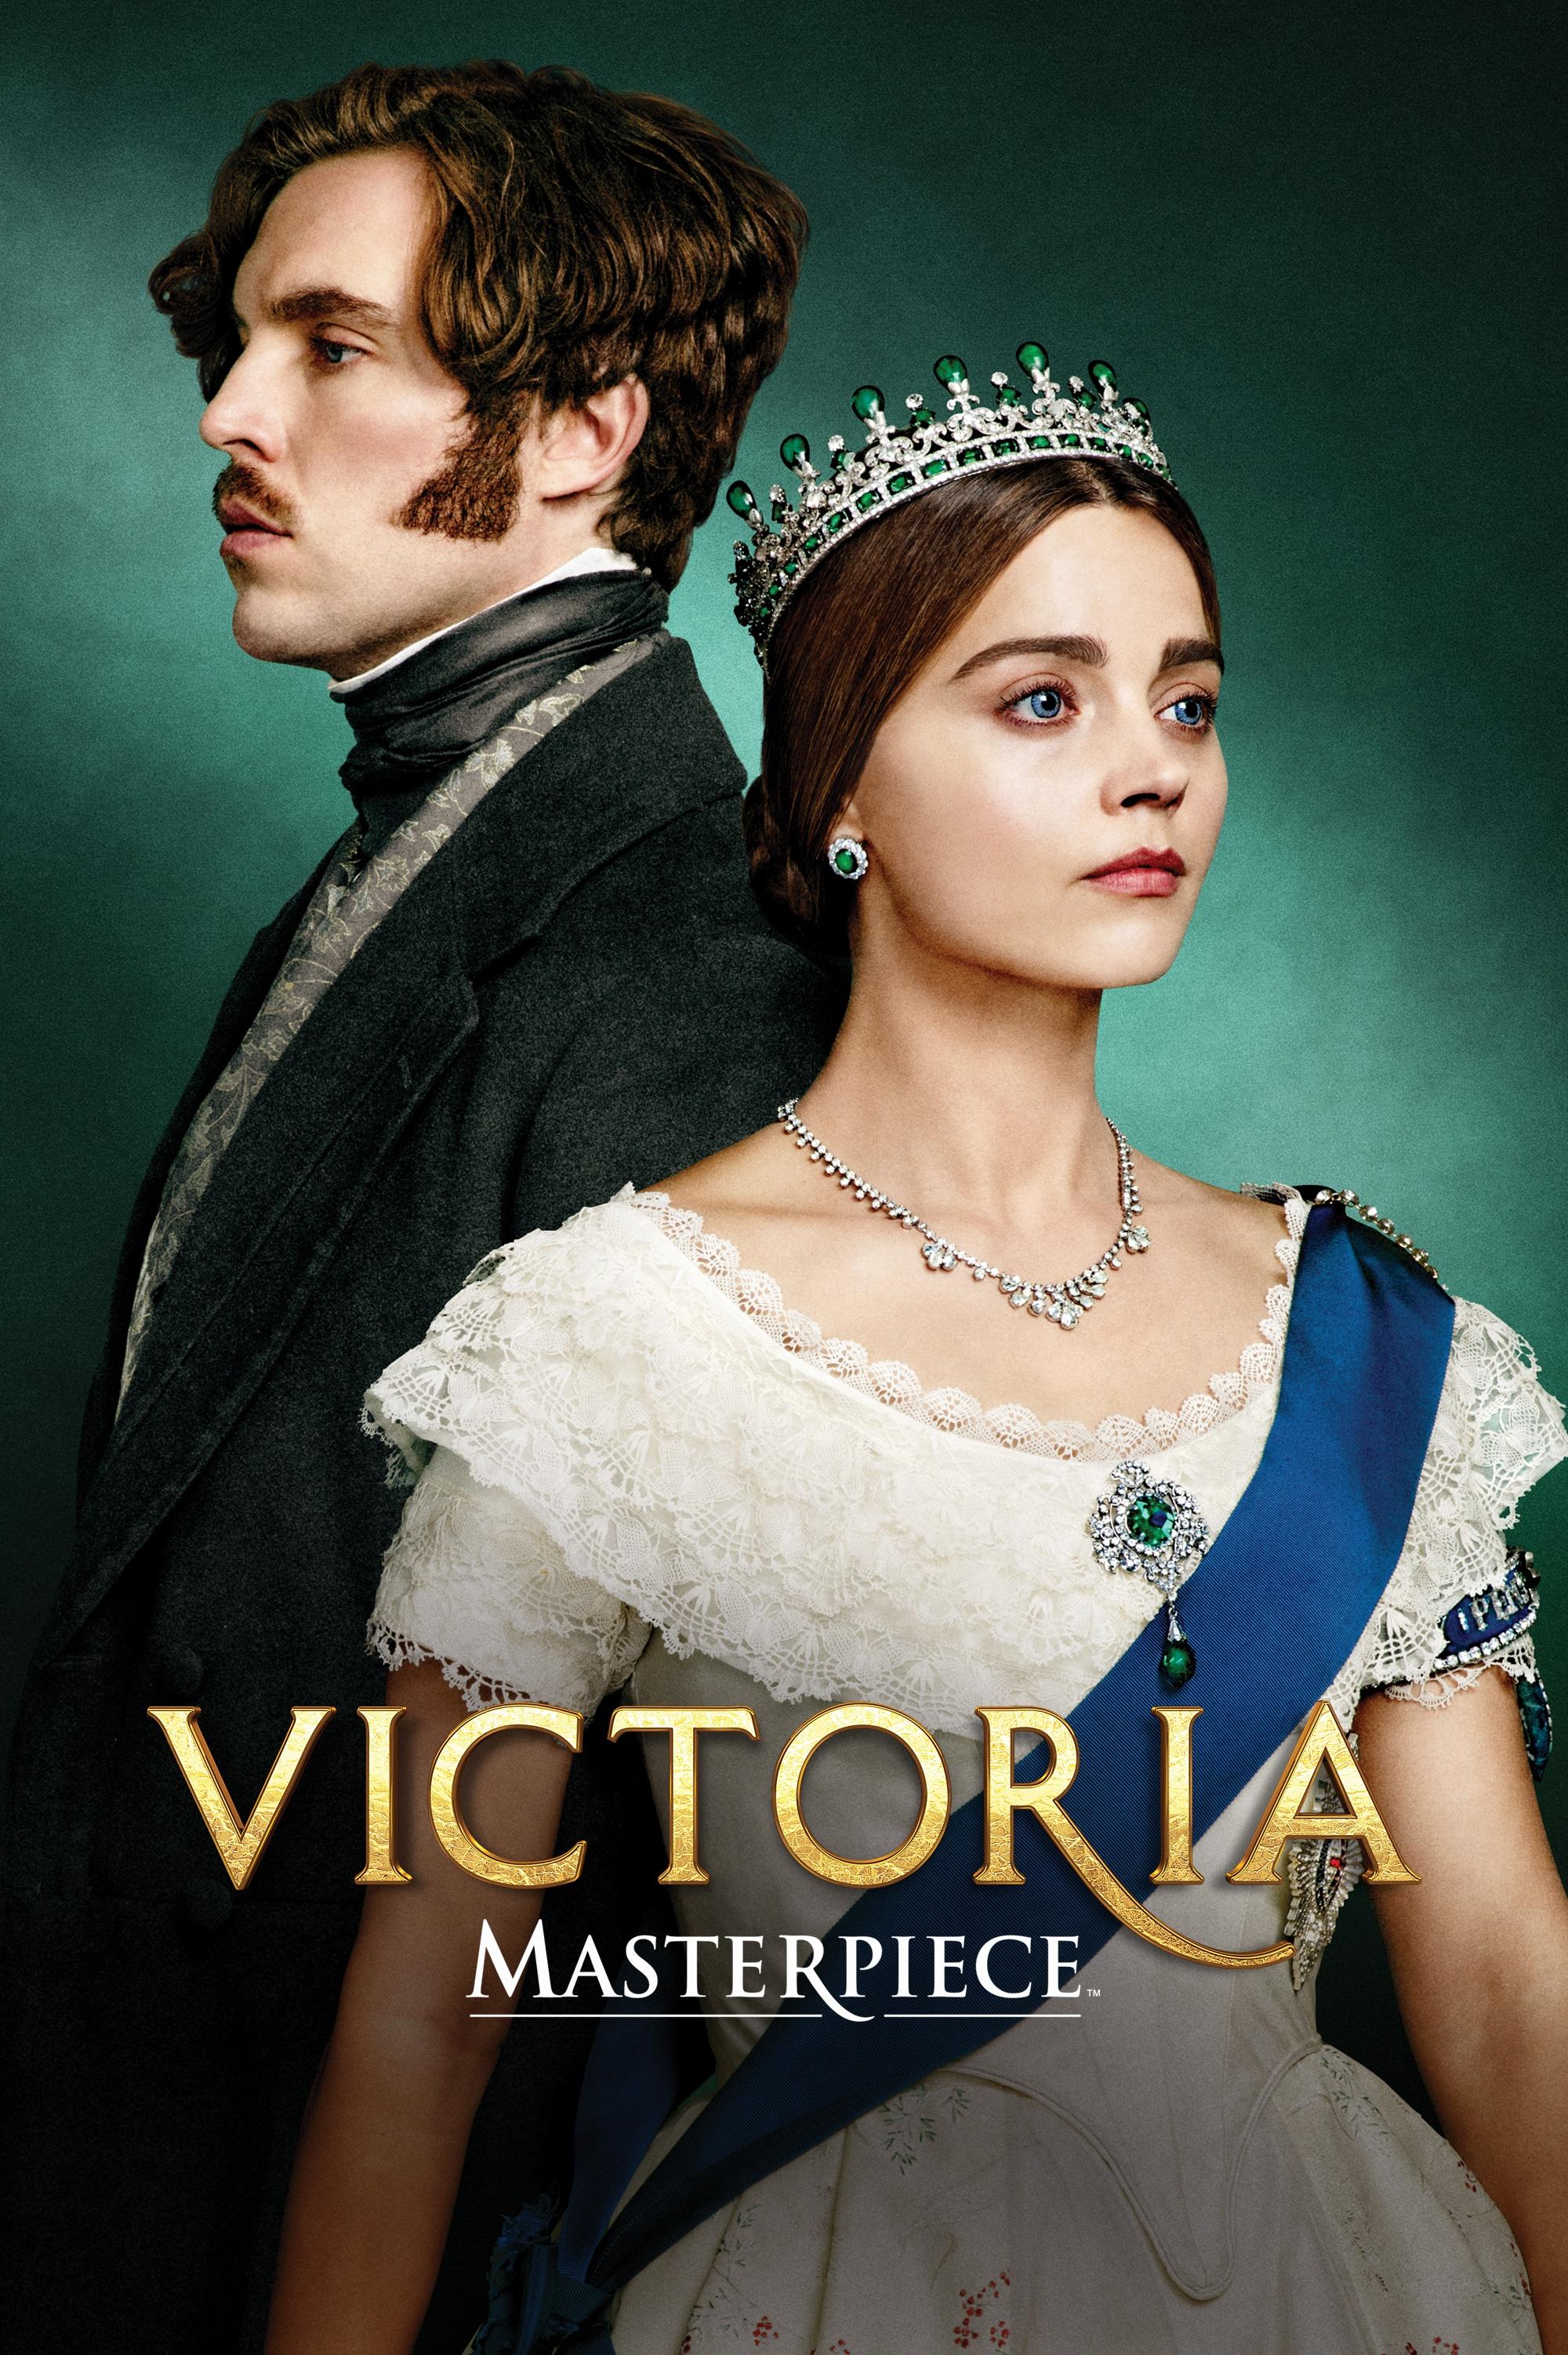 Victoria Season 3